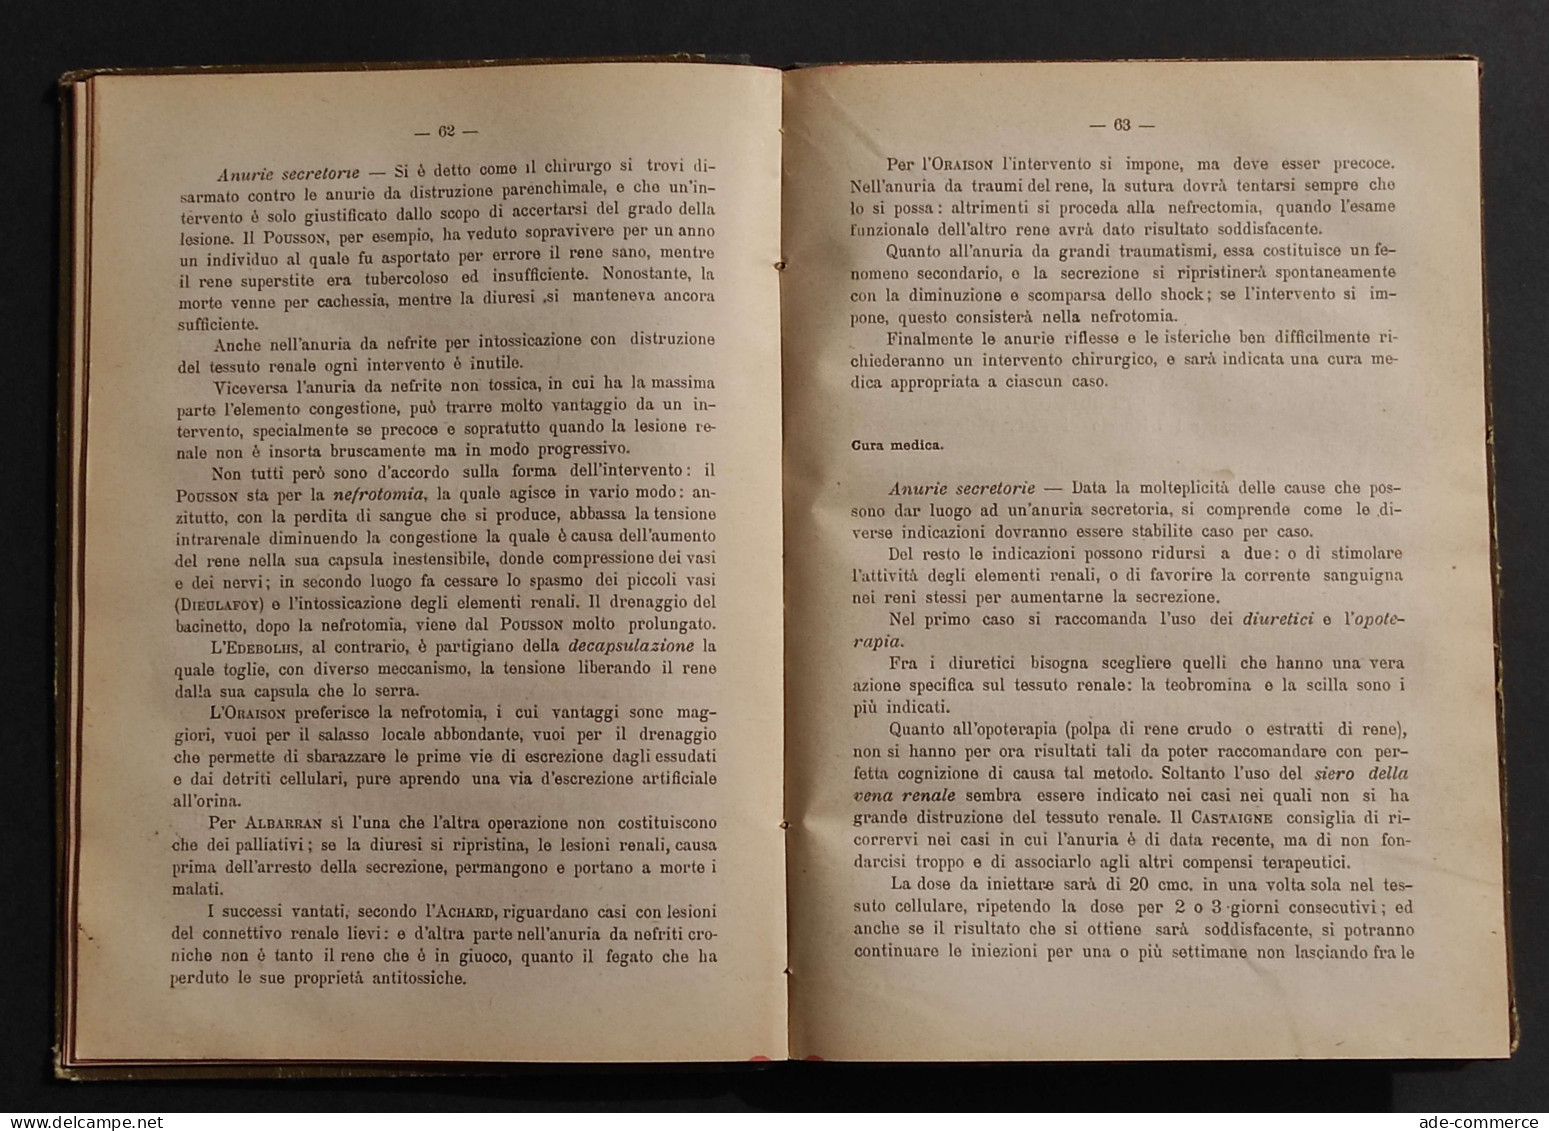 Il Progresso Terapeutico - Annuario Scientifico - A. Gagliardi - 1913 - Medicina, Psicologia